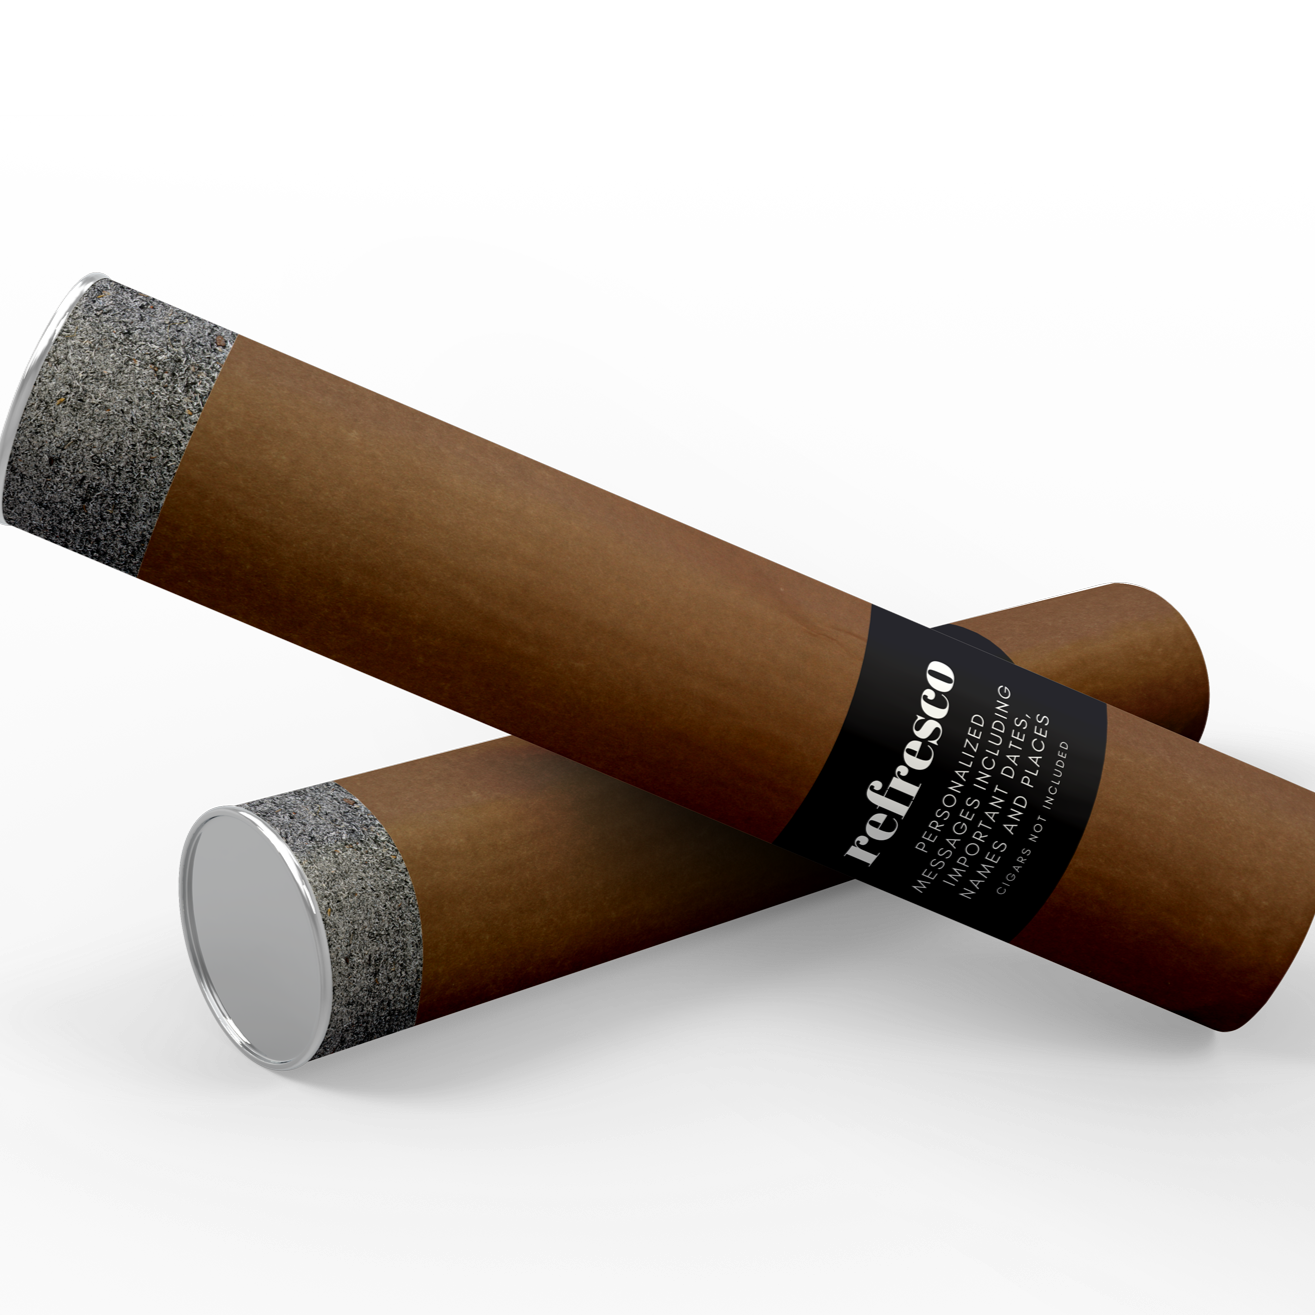 Cigar Casing Gift